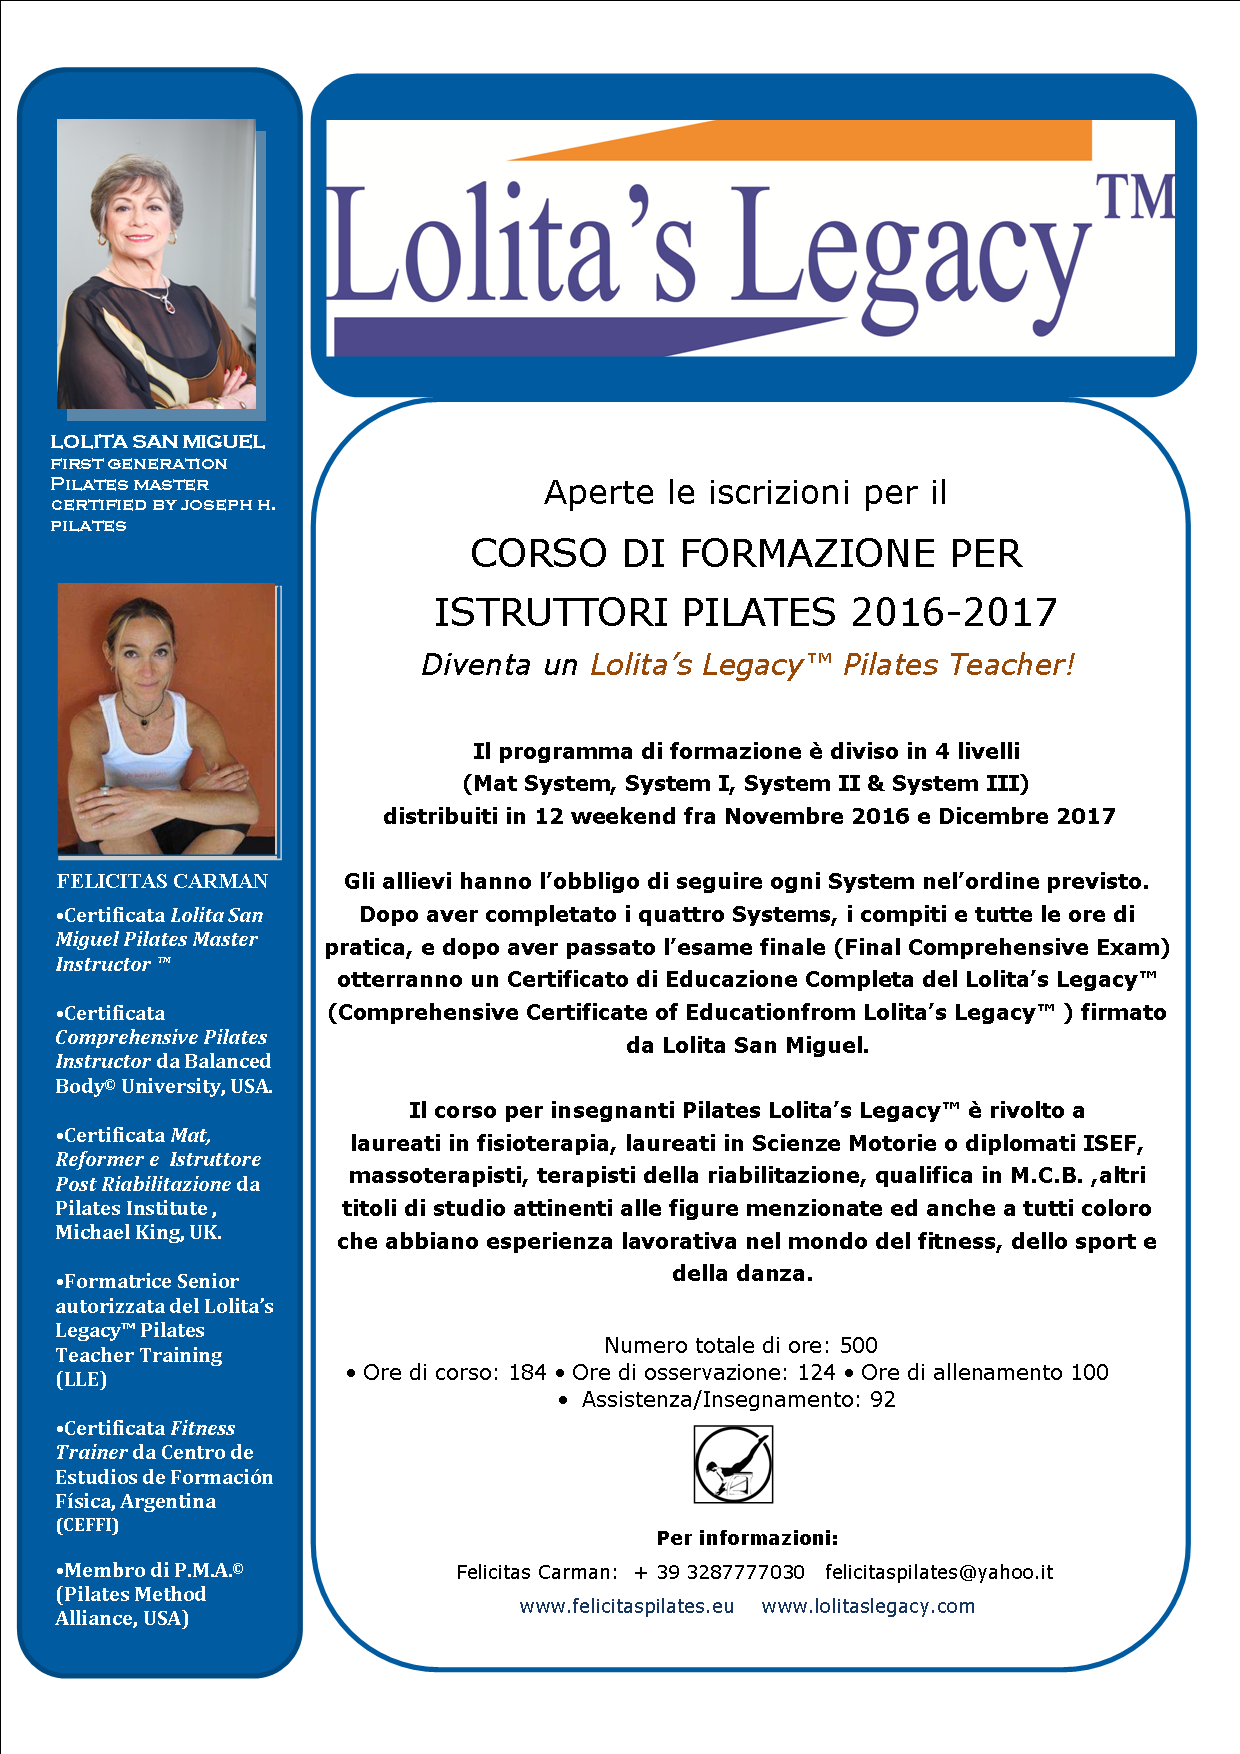 CORSO DI FORMAZIONE PER ISTRUTTORI PILATES 2016-2017    Diventa un Lolita’s Legacy™ Pilates Teacher!